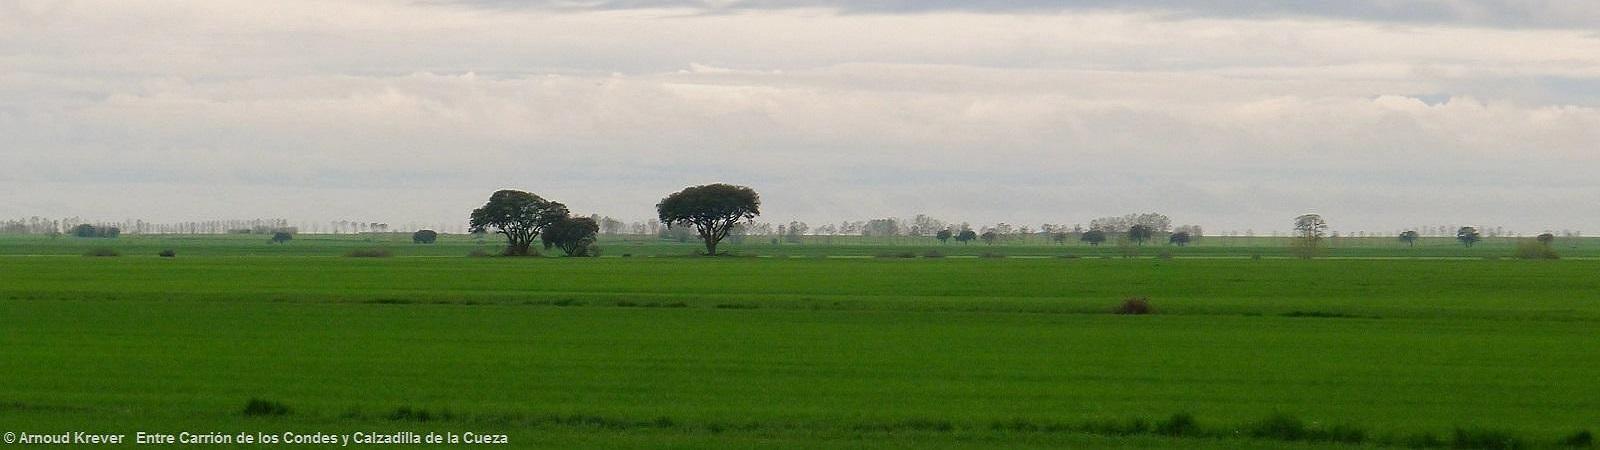 130 01 13Toulouse-S (2025) Paramo-NL-landschap met bomen